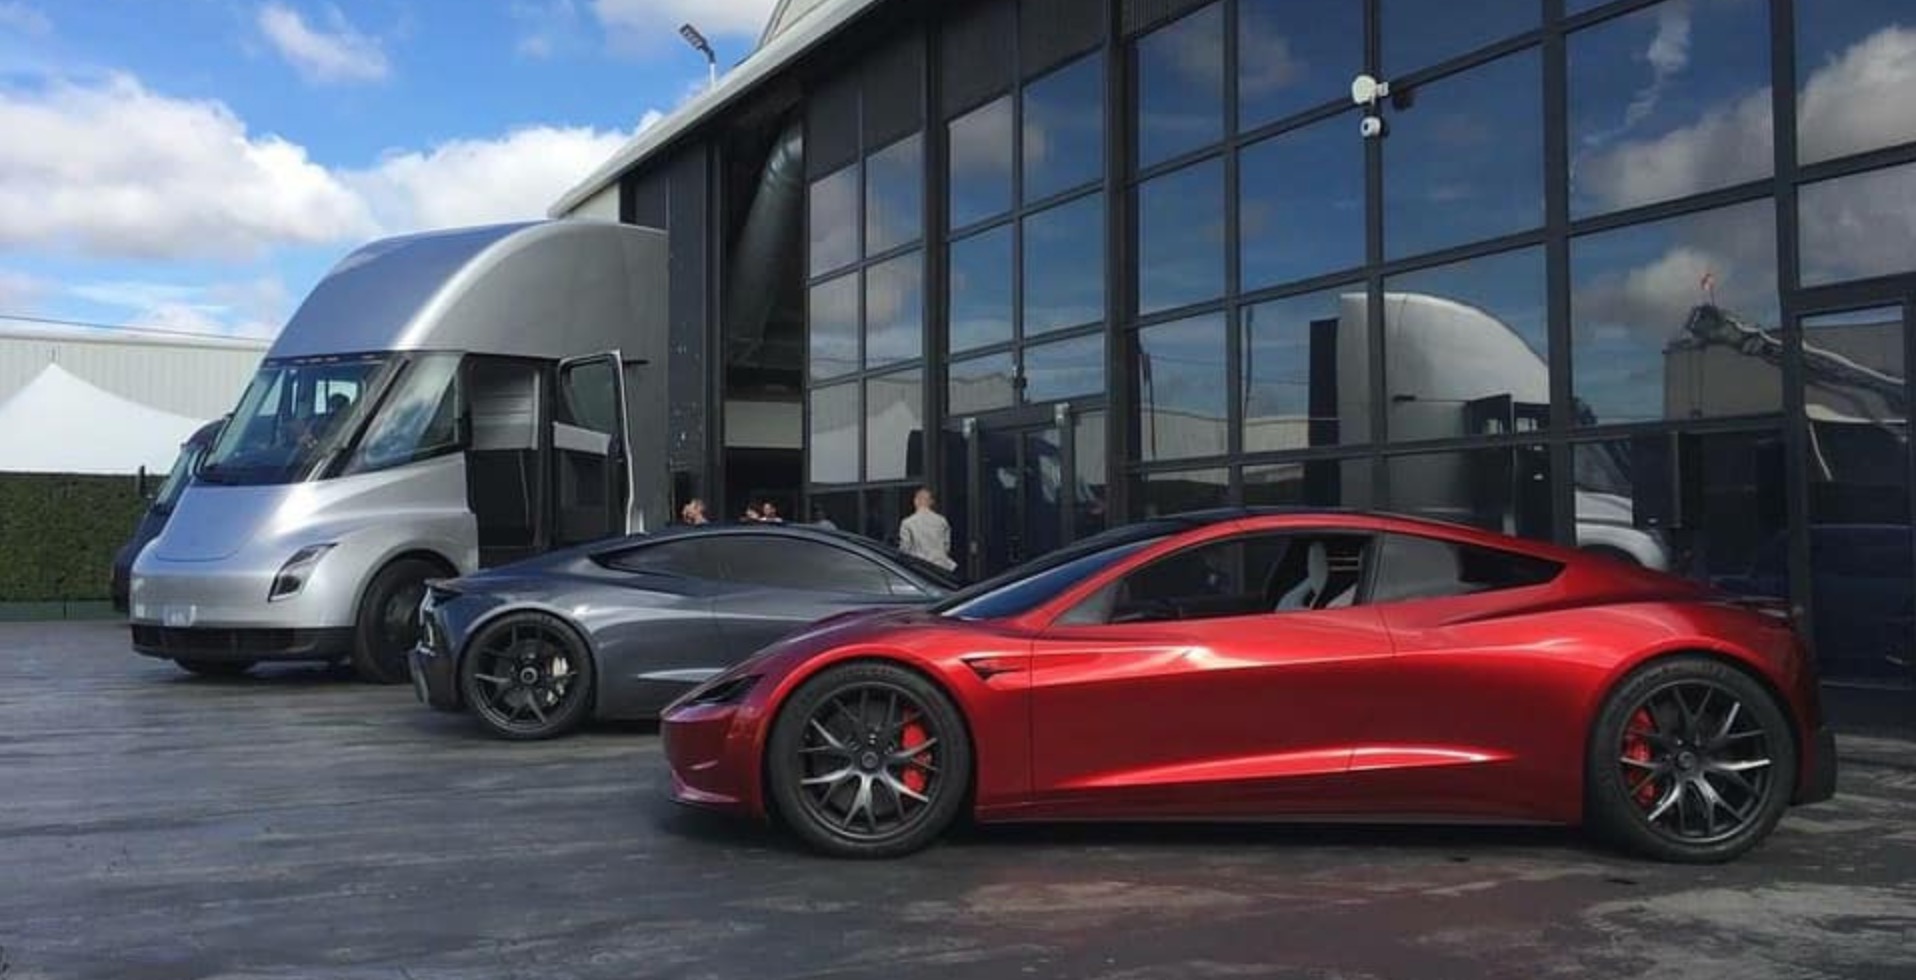 Tesla Car Images Free